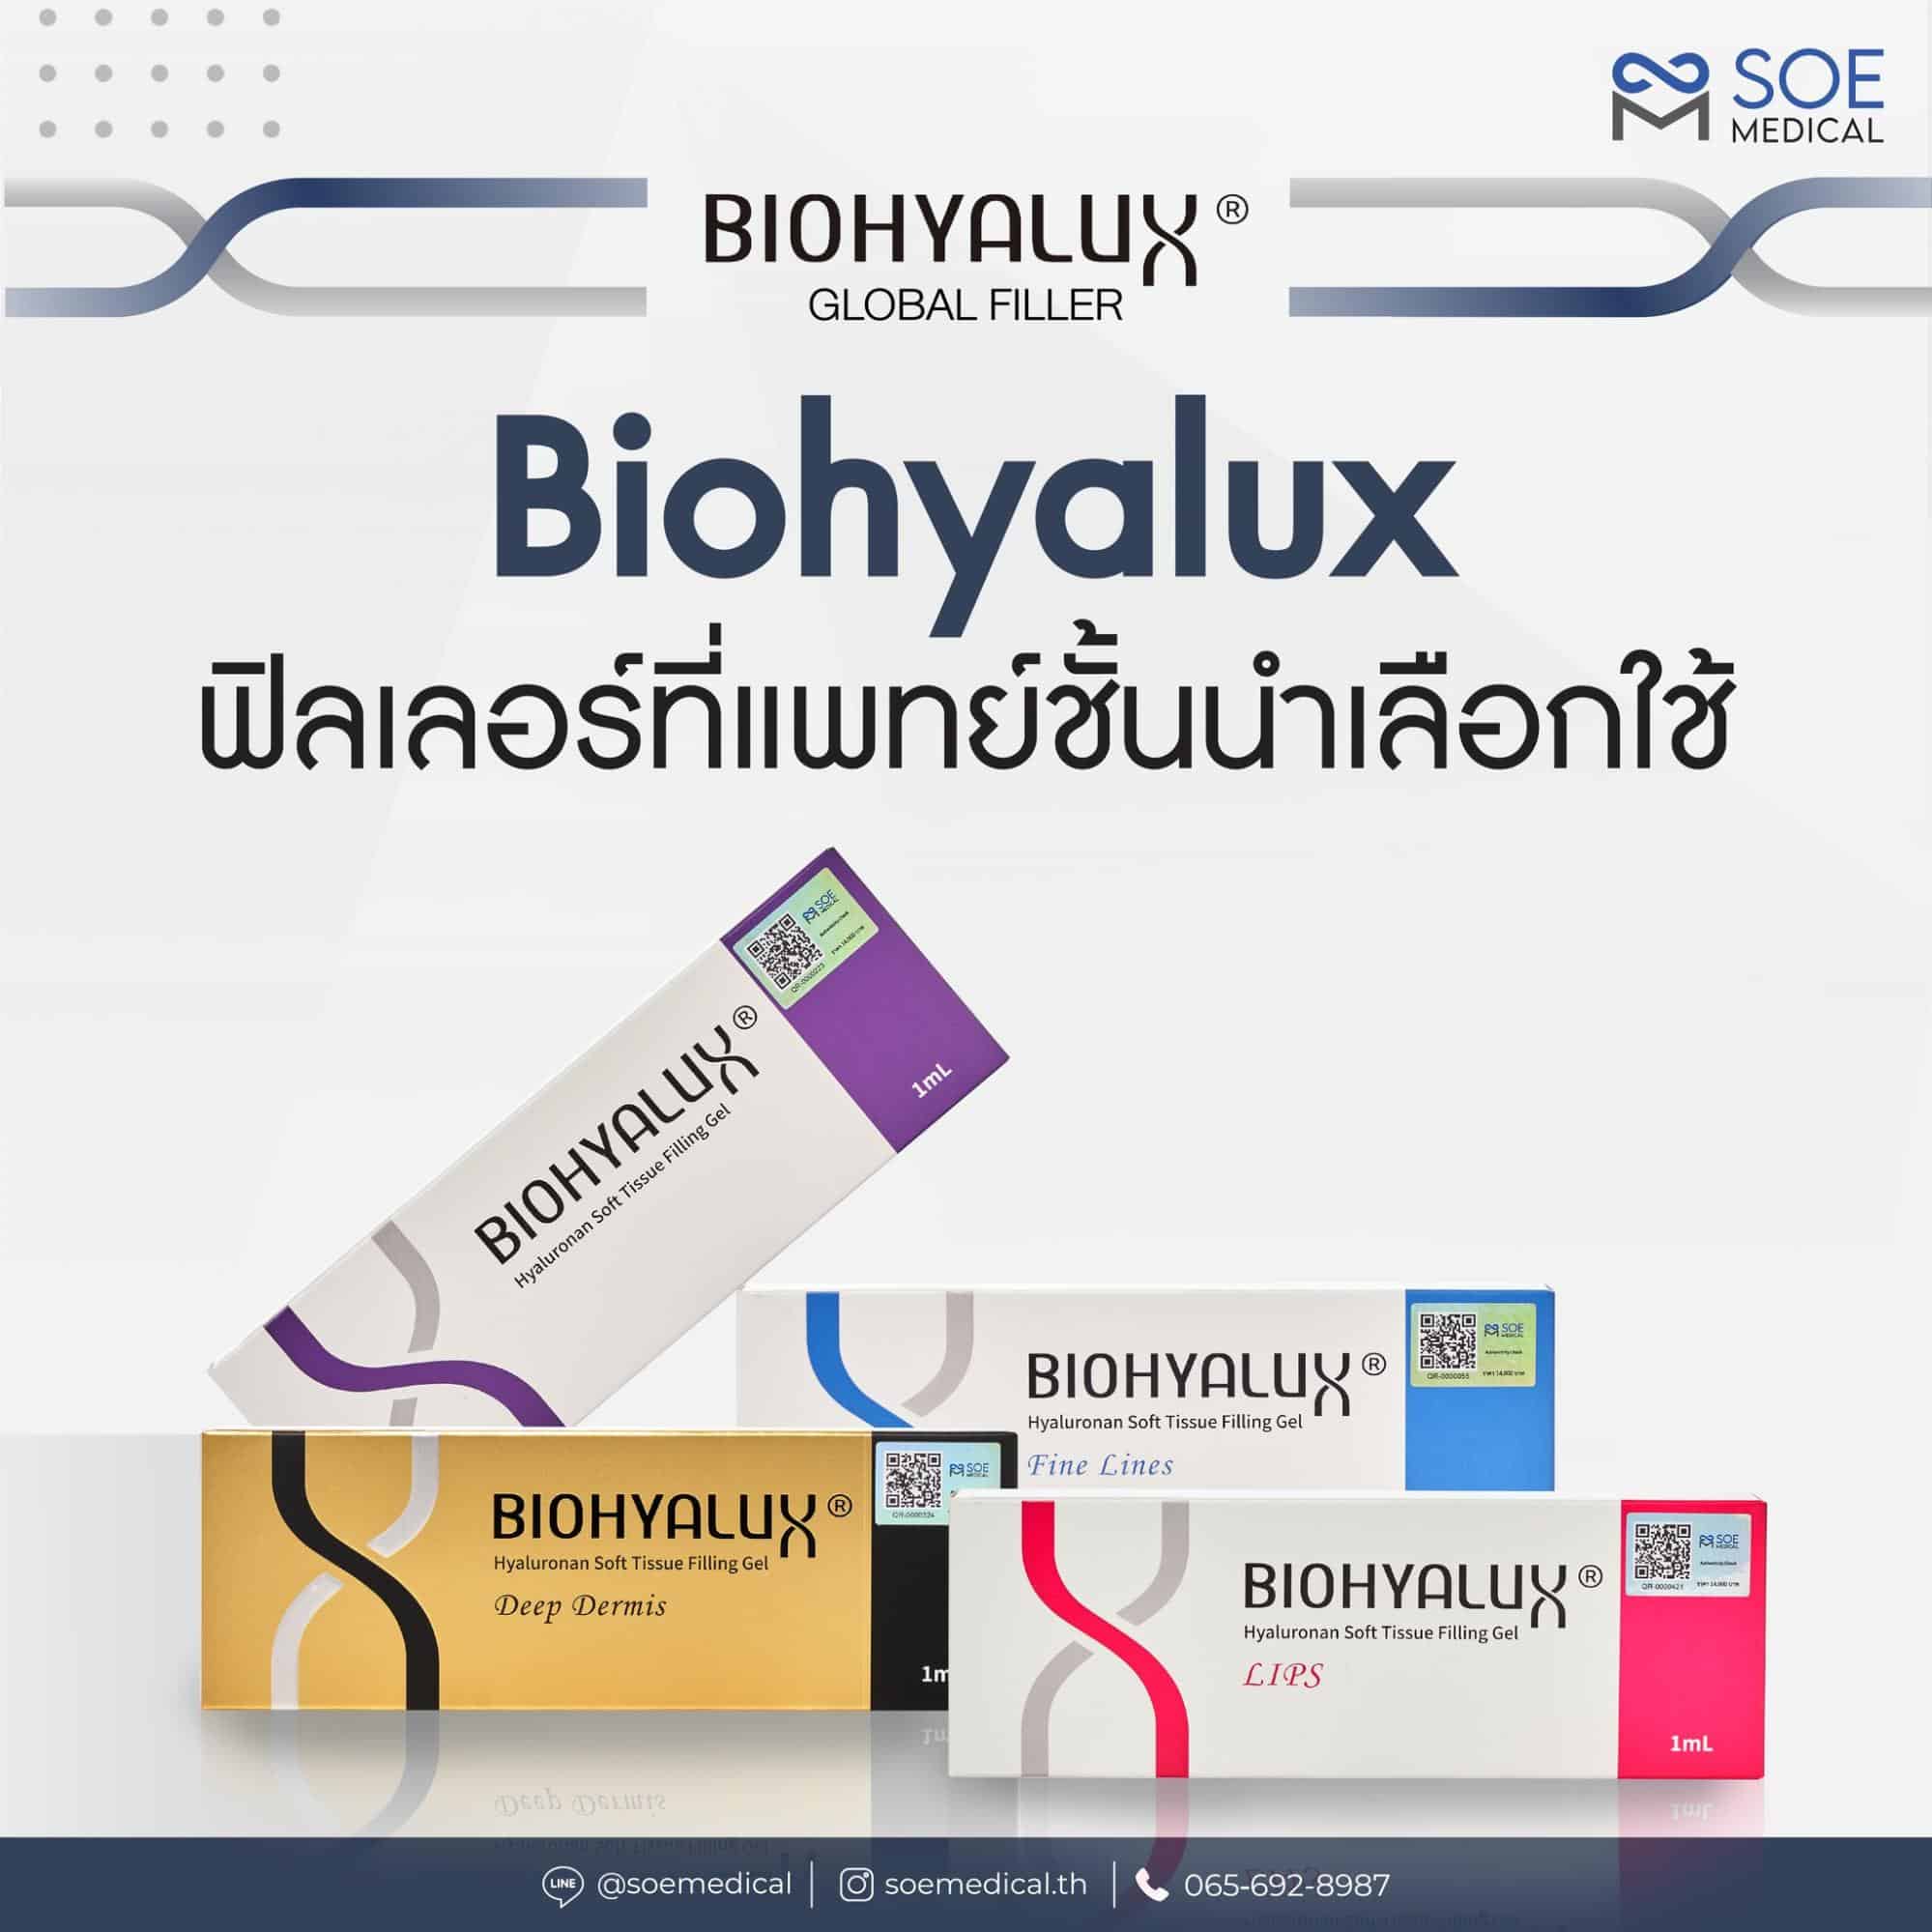 Biohyalux ฟิลเลอร์ที่แพทย์ชั้นนำเลือกใช้